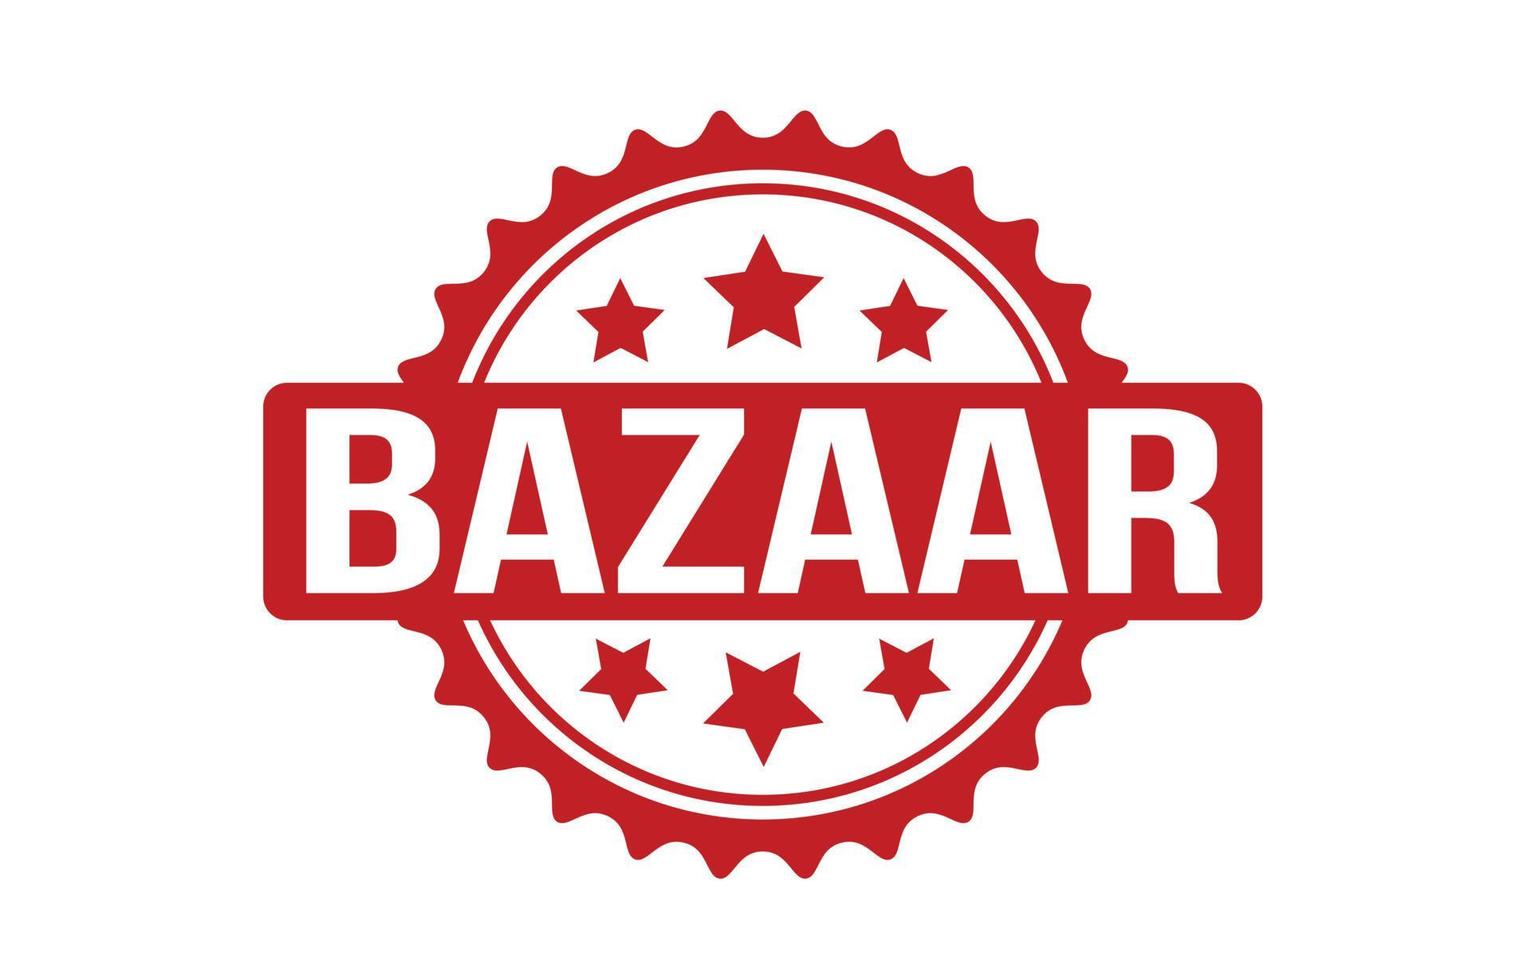 Bazaar Rubber Stamp. Red Bazaar Rubber Grunge Stamp Seal Vector ...